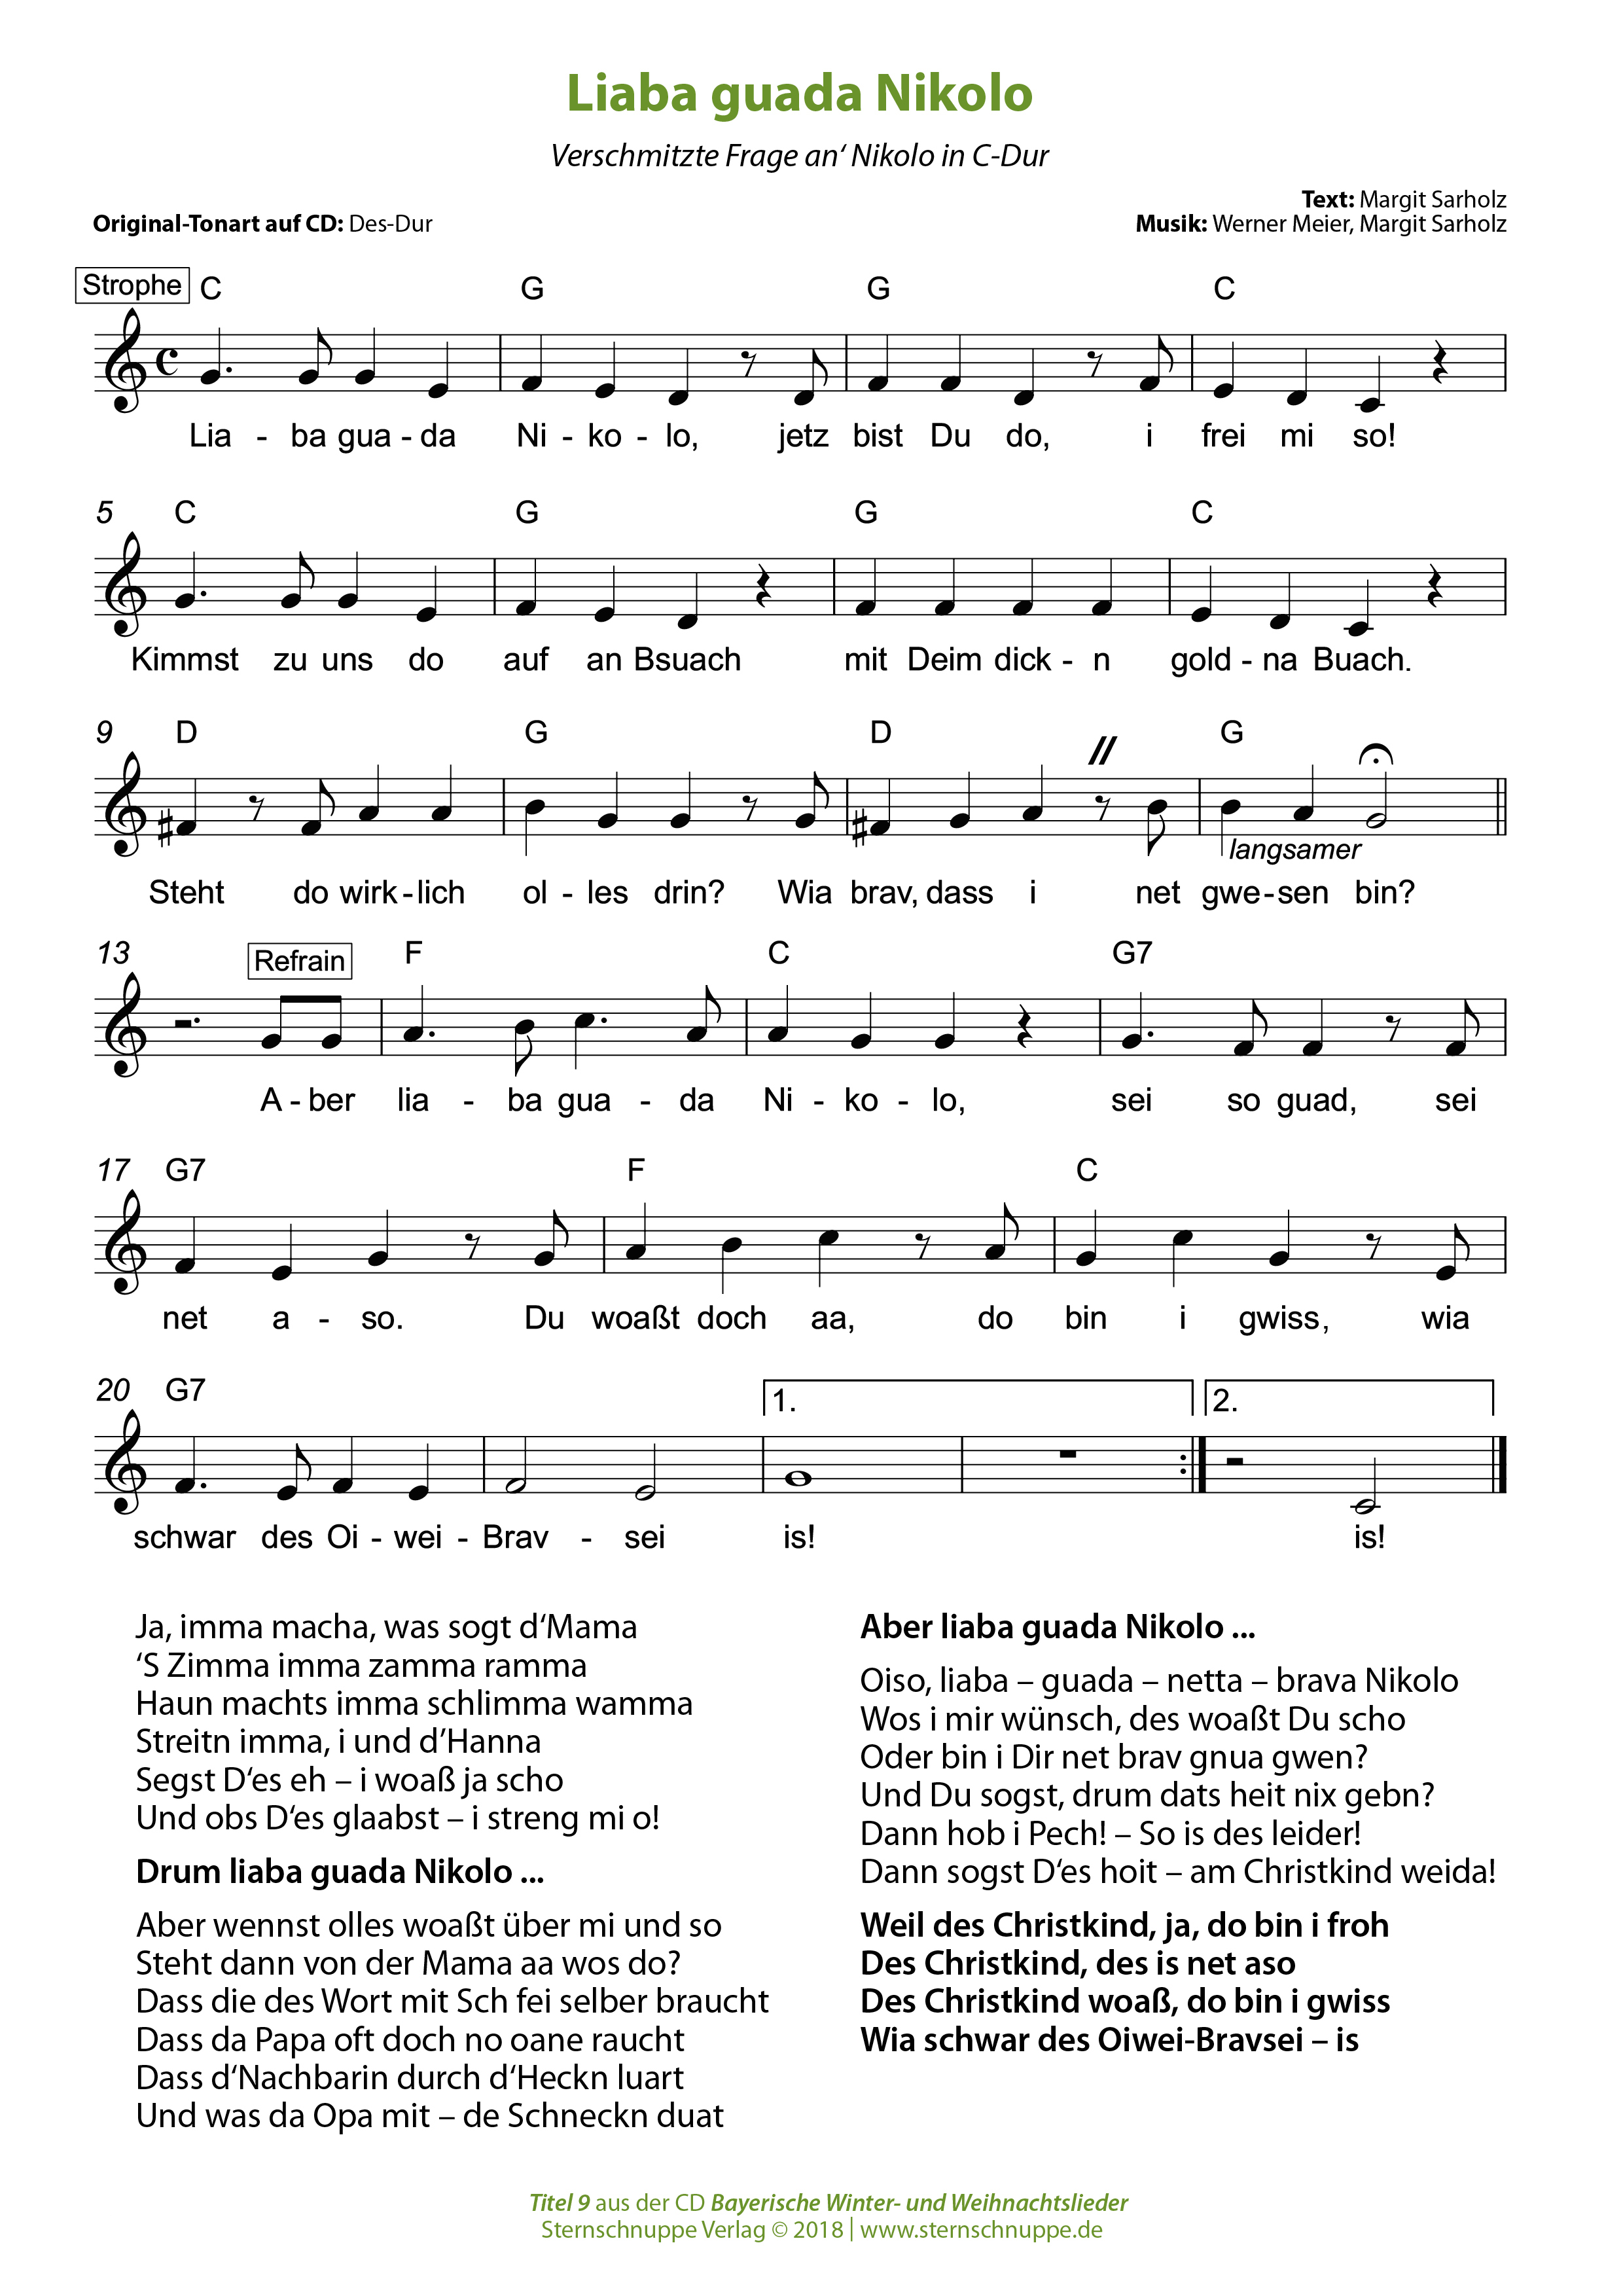 Liedtext, Akkorde und Noten vom Kinderlied Liaba guada Nikolo